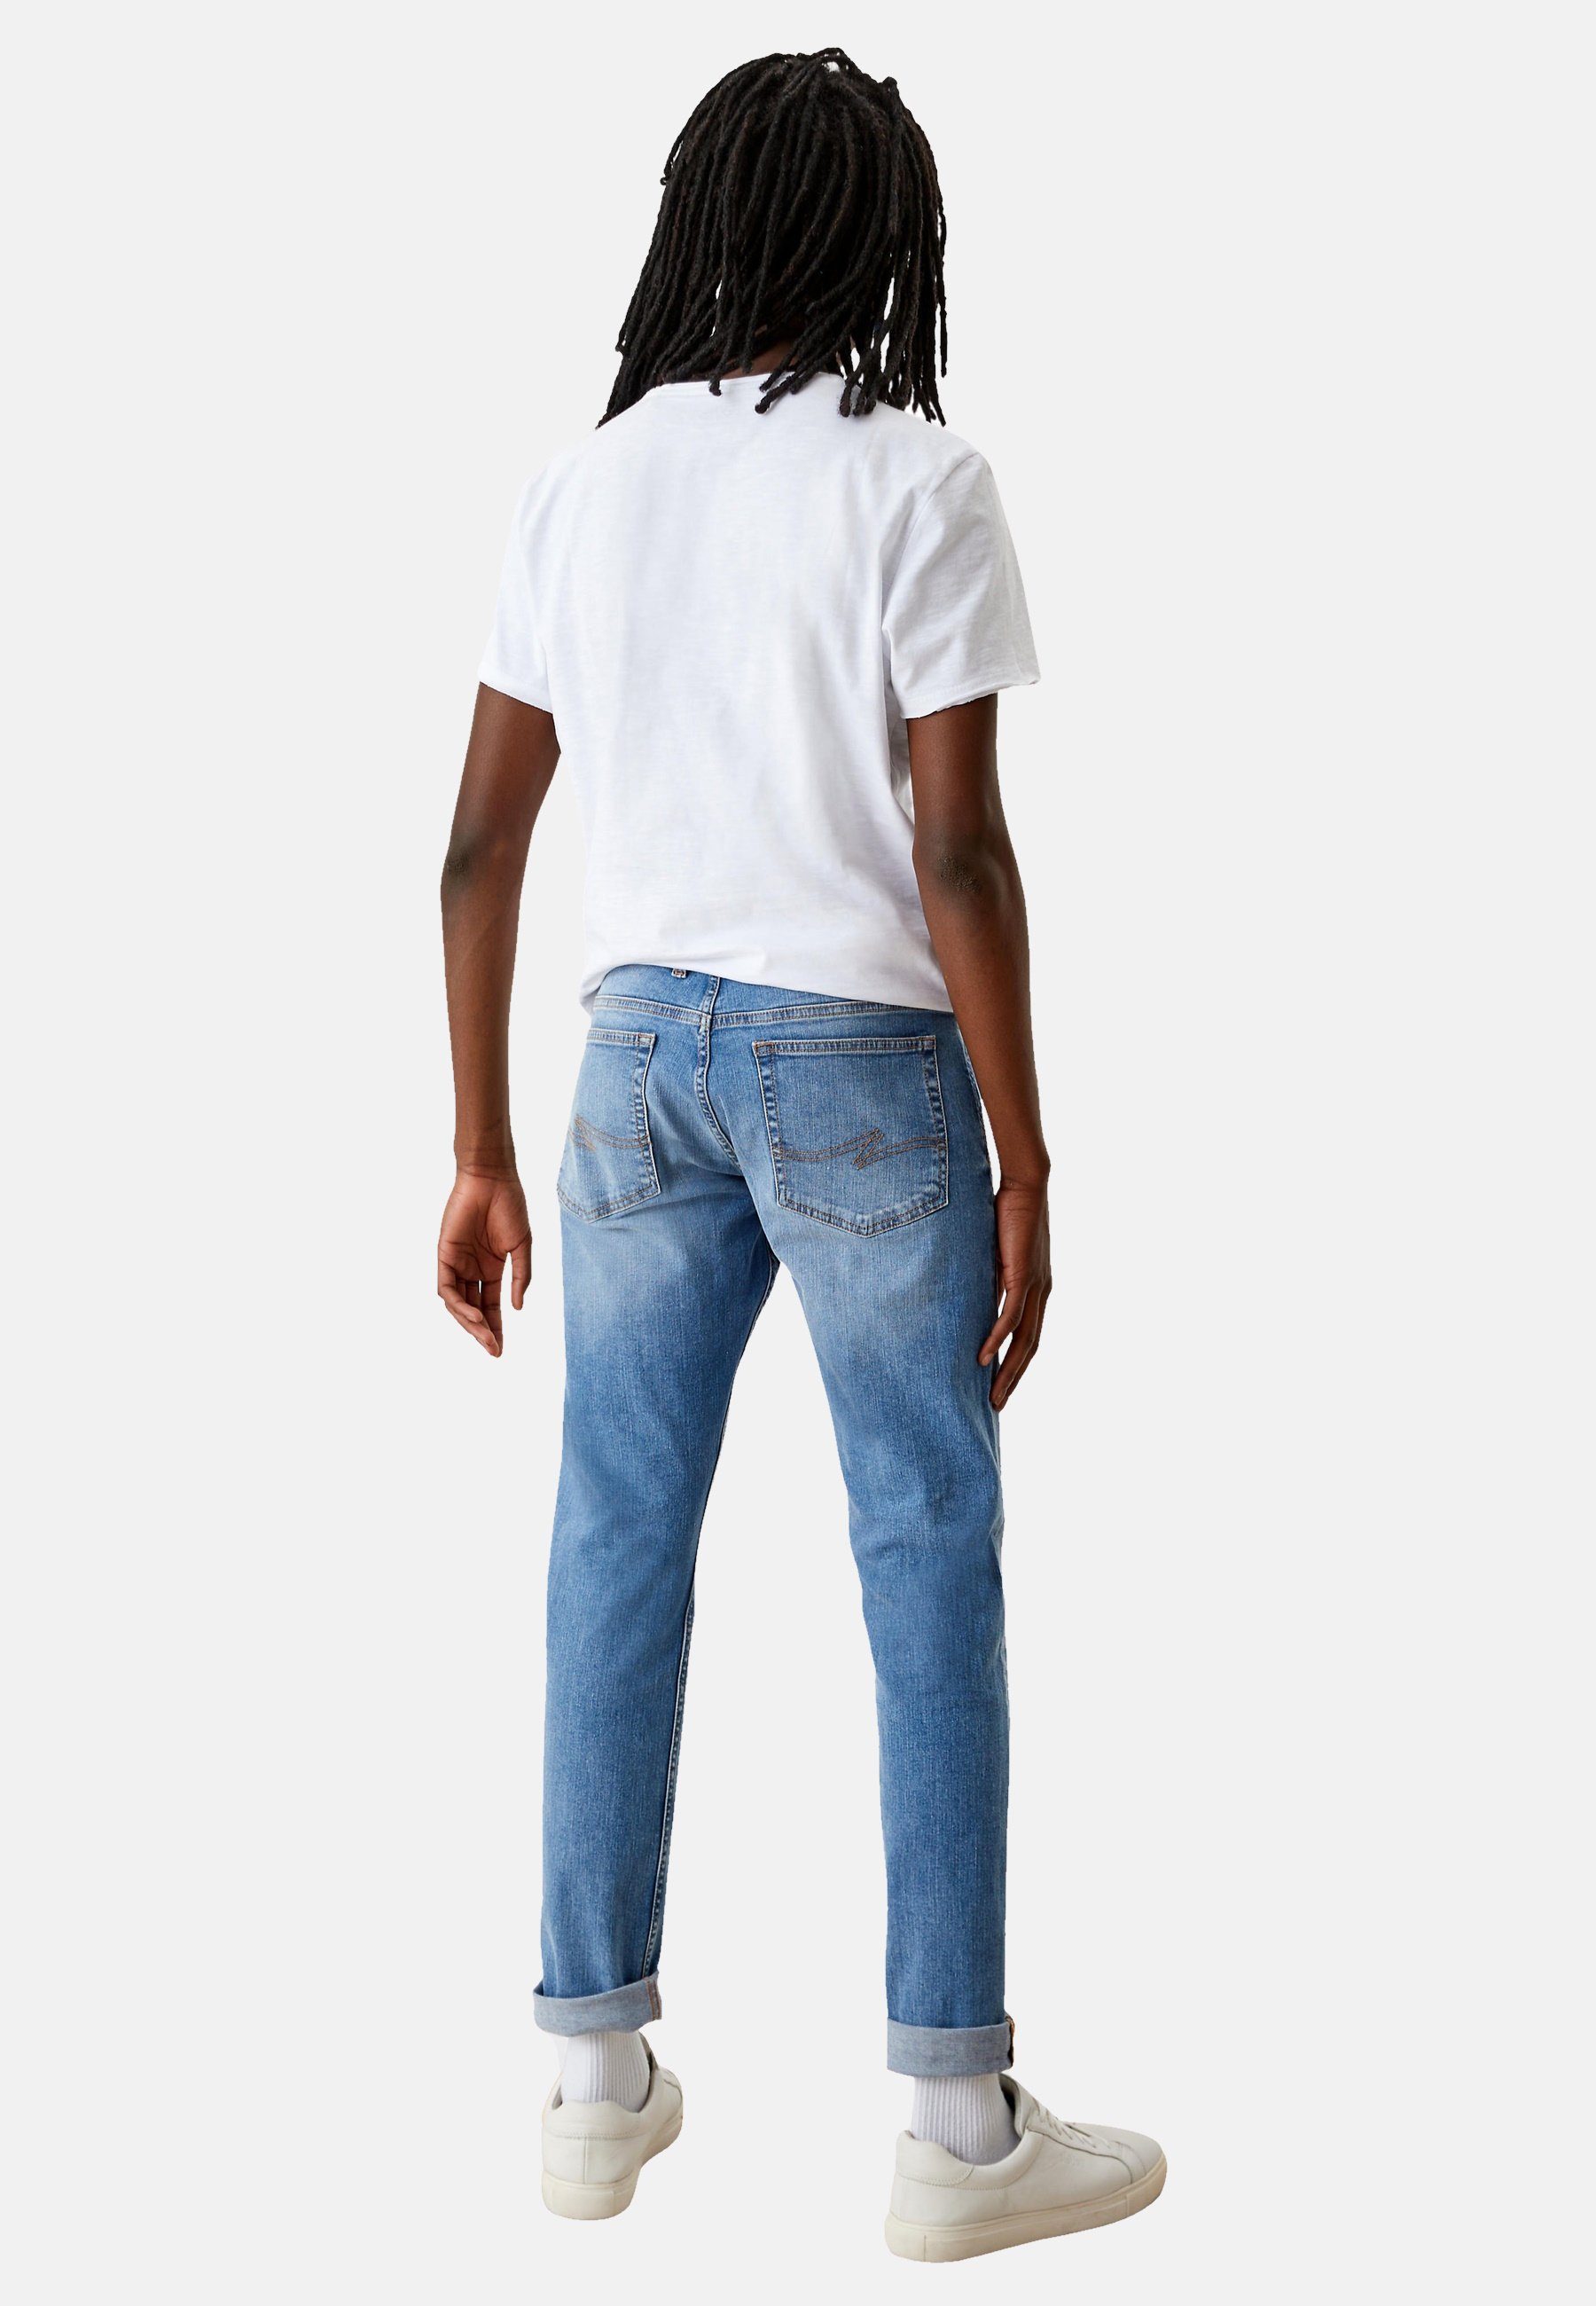 s.Oliver 5-Pocket-Jeans Five-Pocket-Style Jeans Slim im Hose